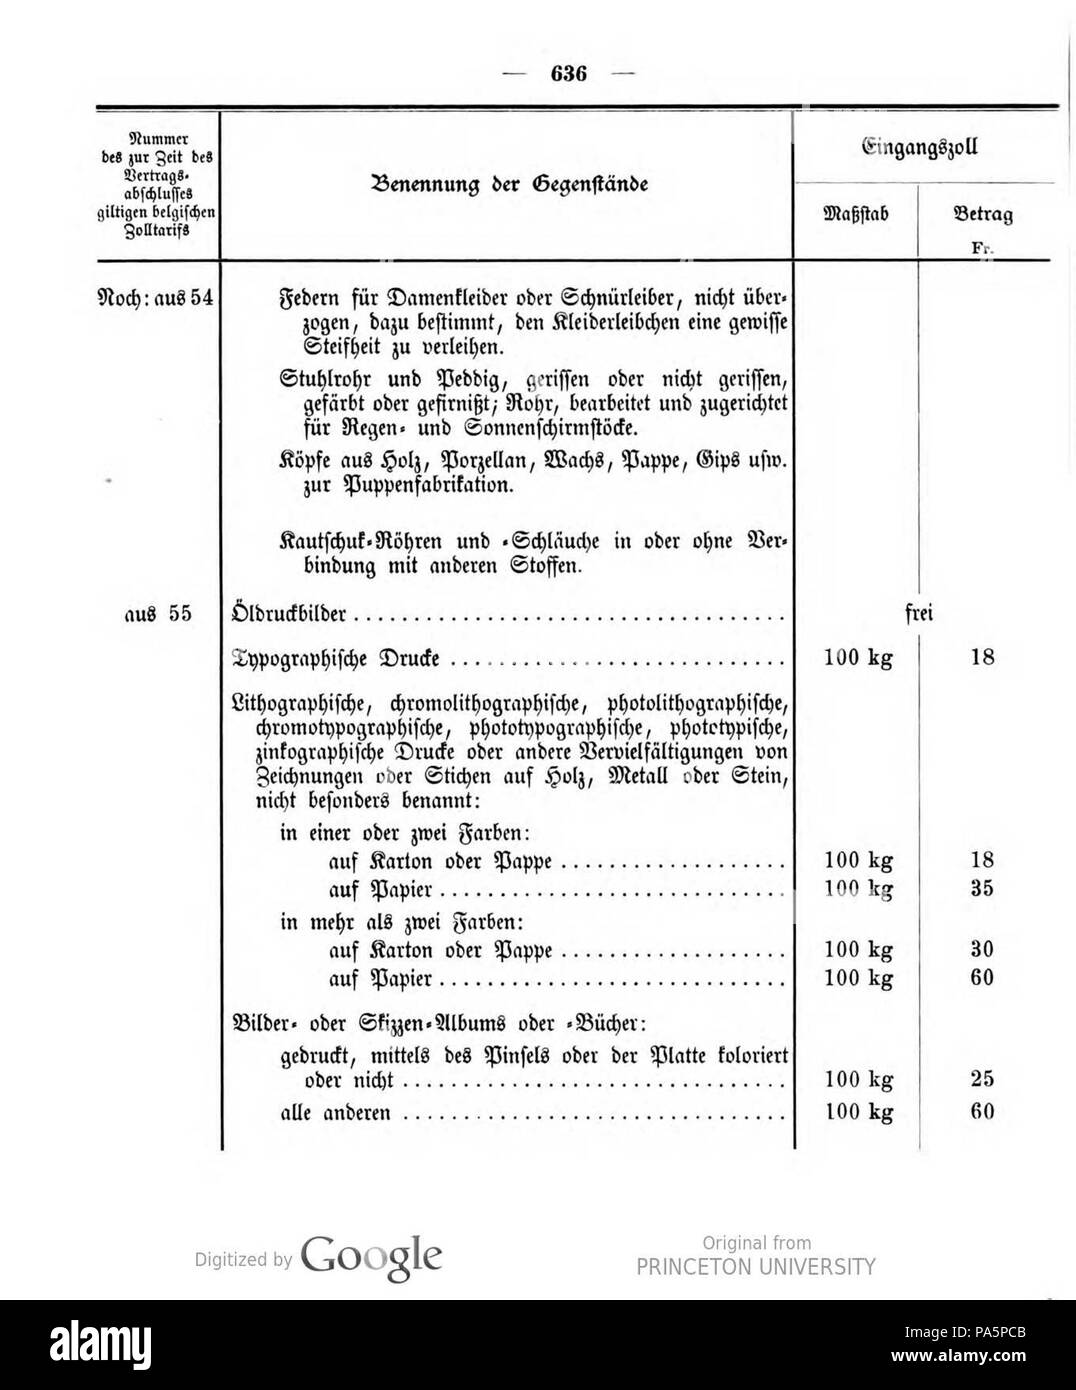 415 Deutsches Reichsgesetzblatt 1905 032 636 Stock Photo